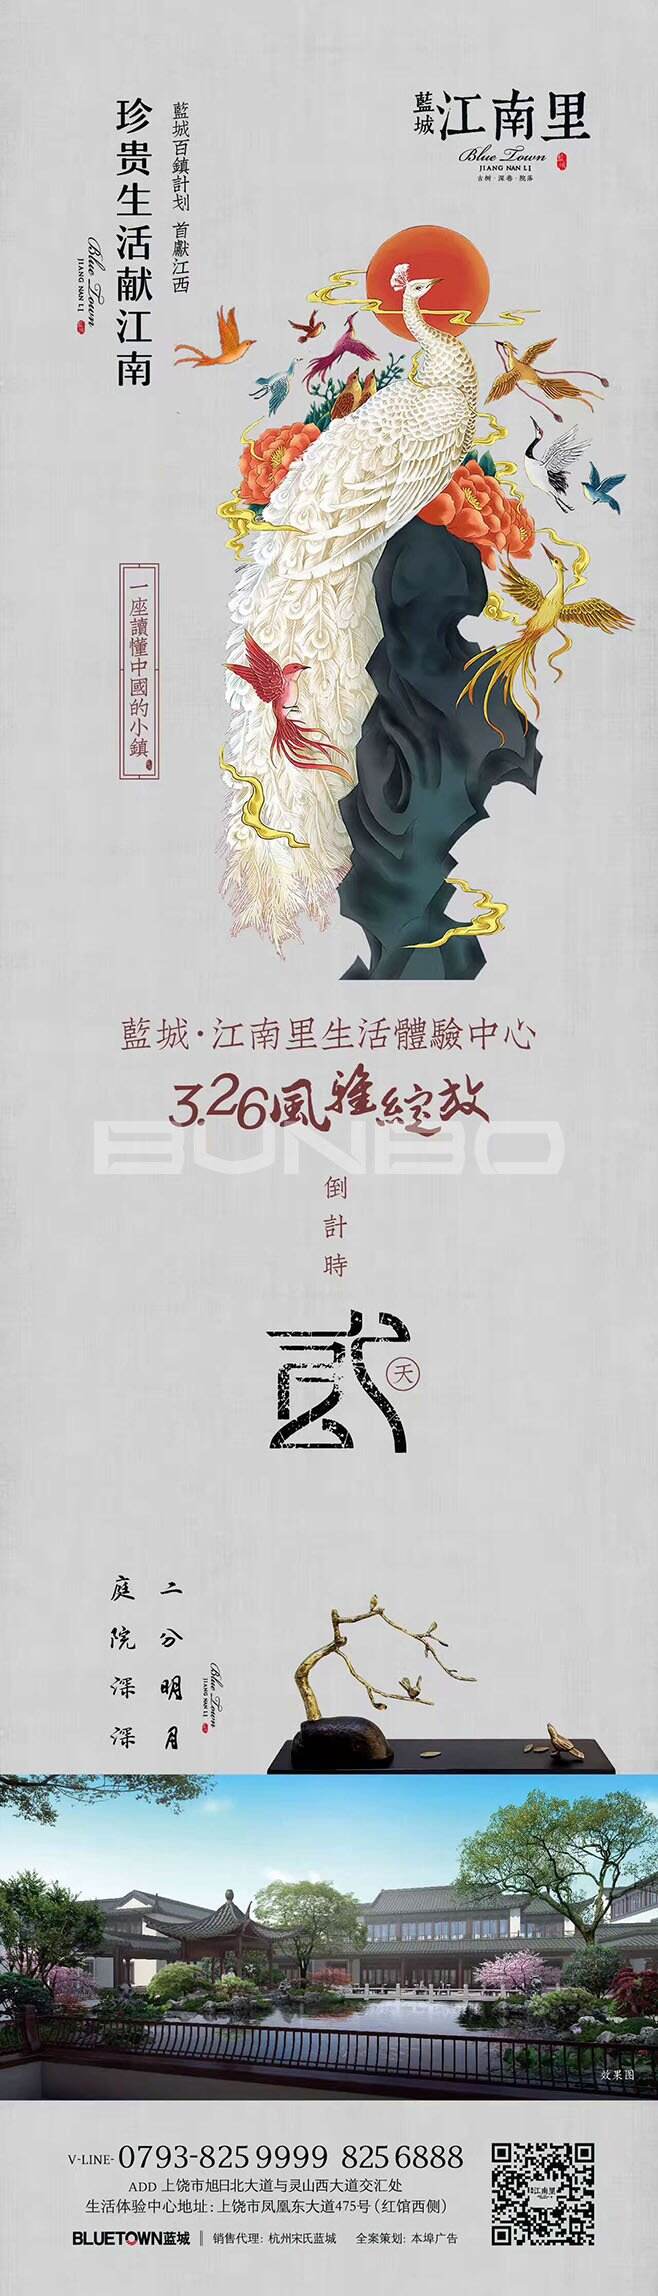 《珍贵生活献江南》系列蓝城江南里生活体验馆开放预告广告